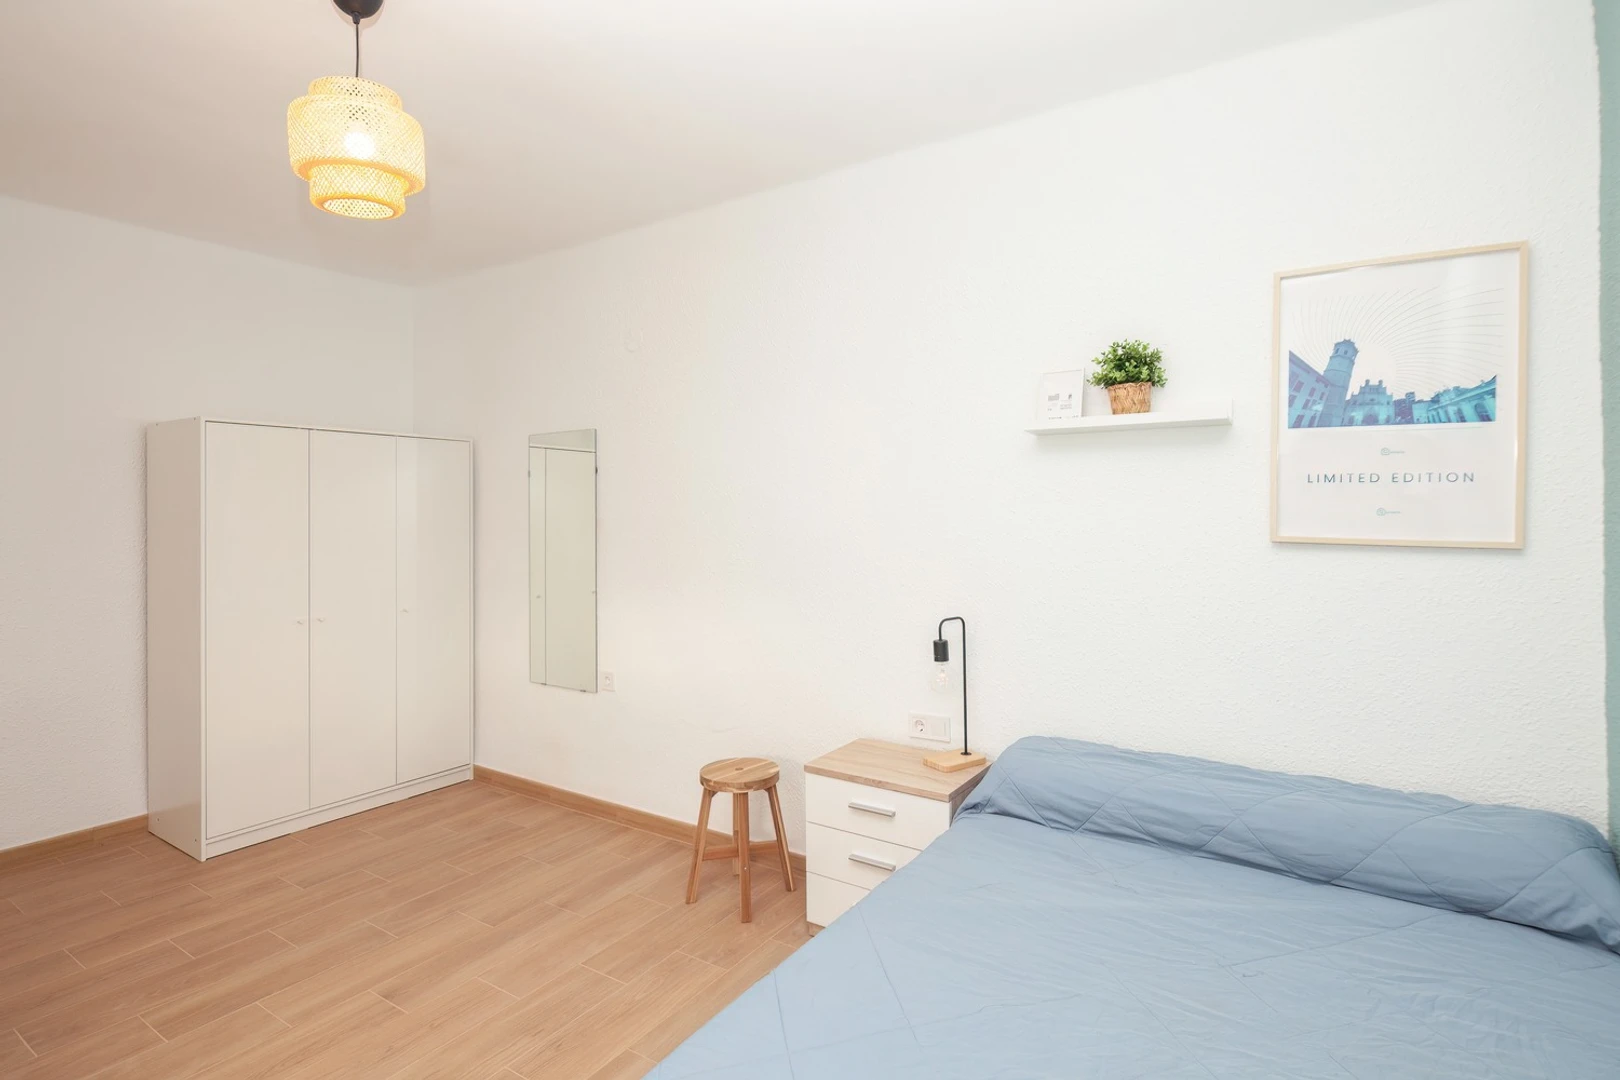 Alquiler de habitación en piso compartido en Castellón De La Plana